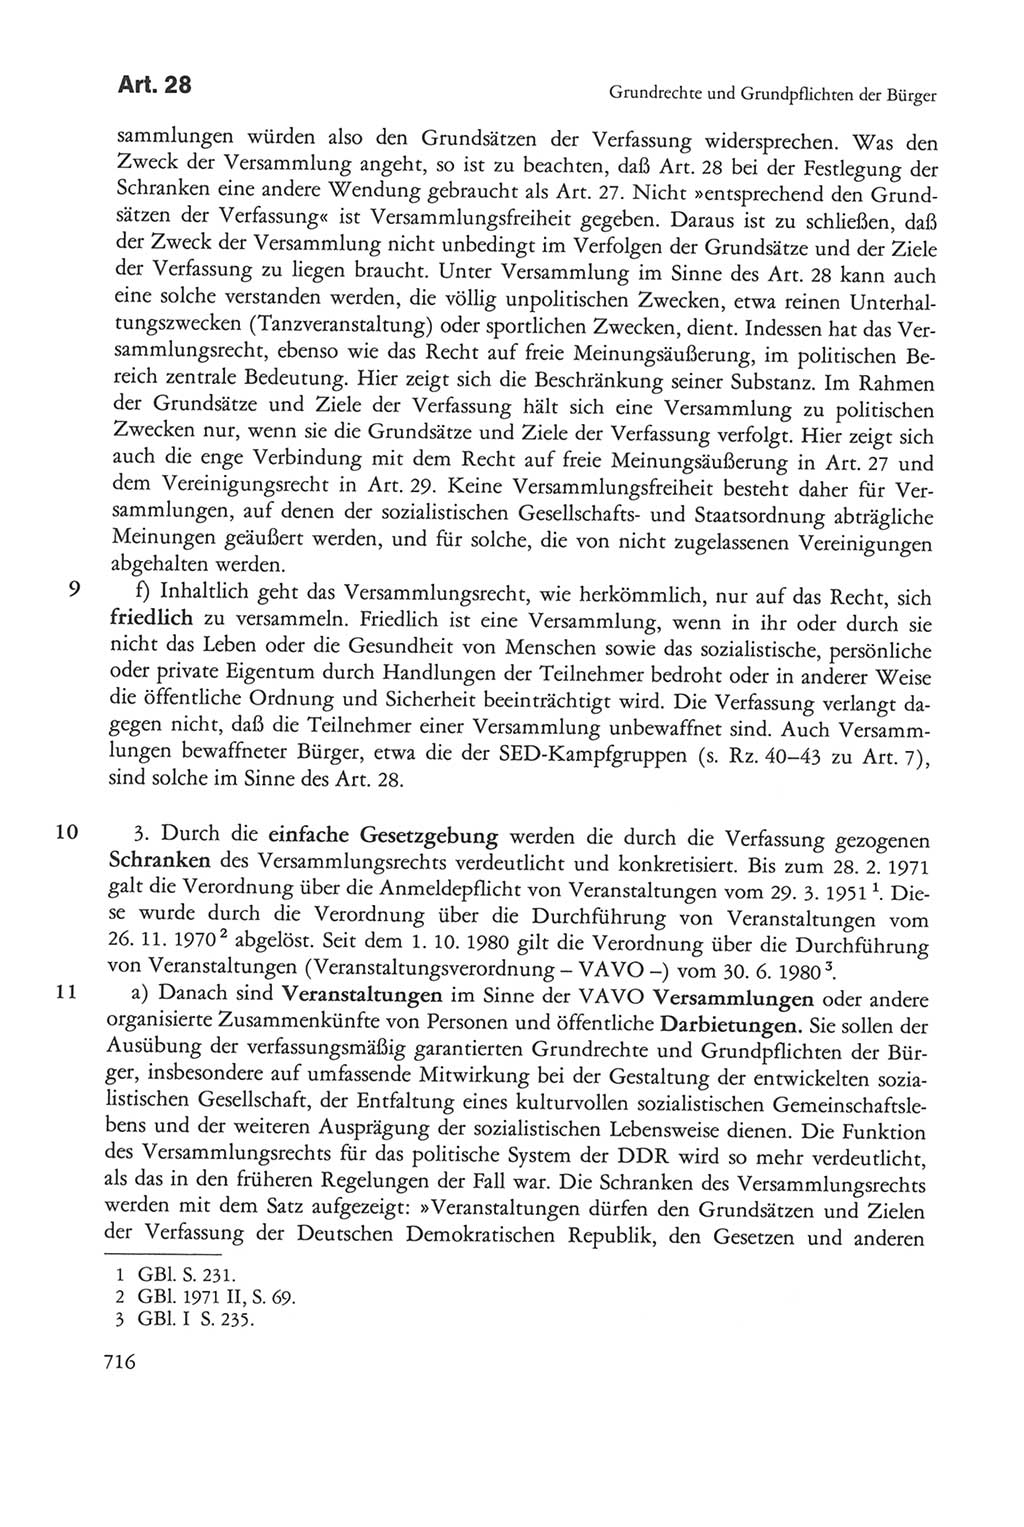 Die sozialistische Verfassung der Deutschen Demokratischen Republik (DDR), Kommentar 1982, Seite 716 (Soz. Verf. DDR Komm. 1982, S. 716)